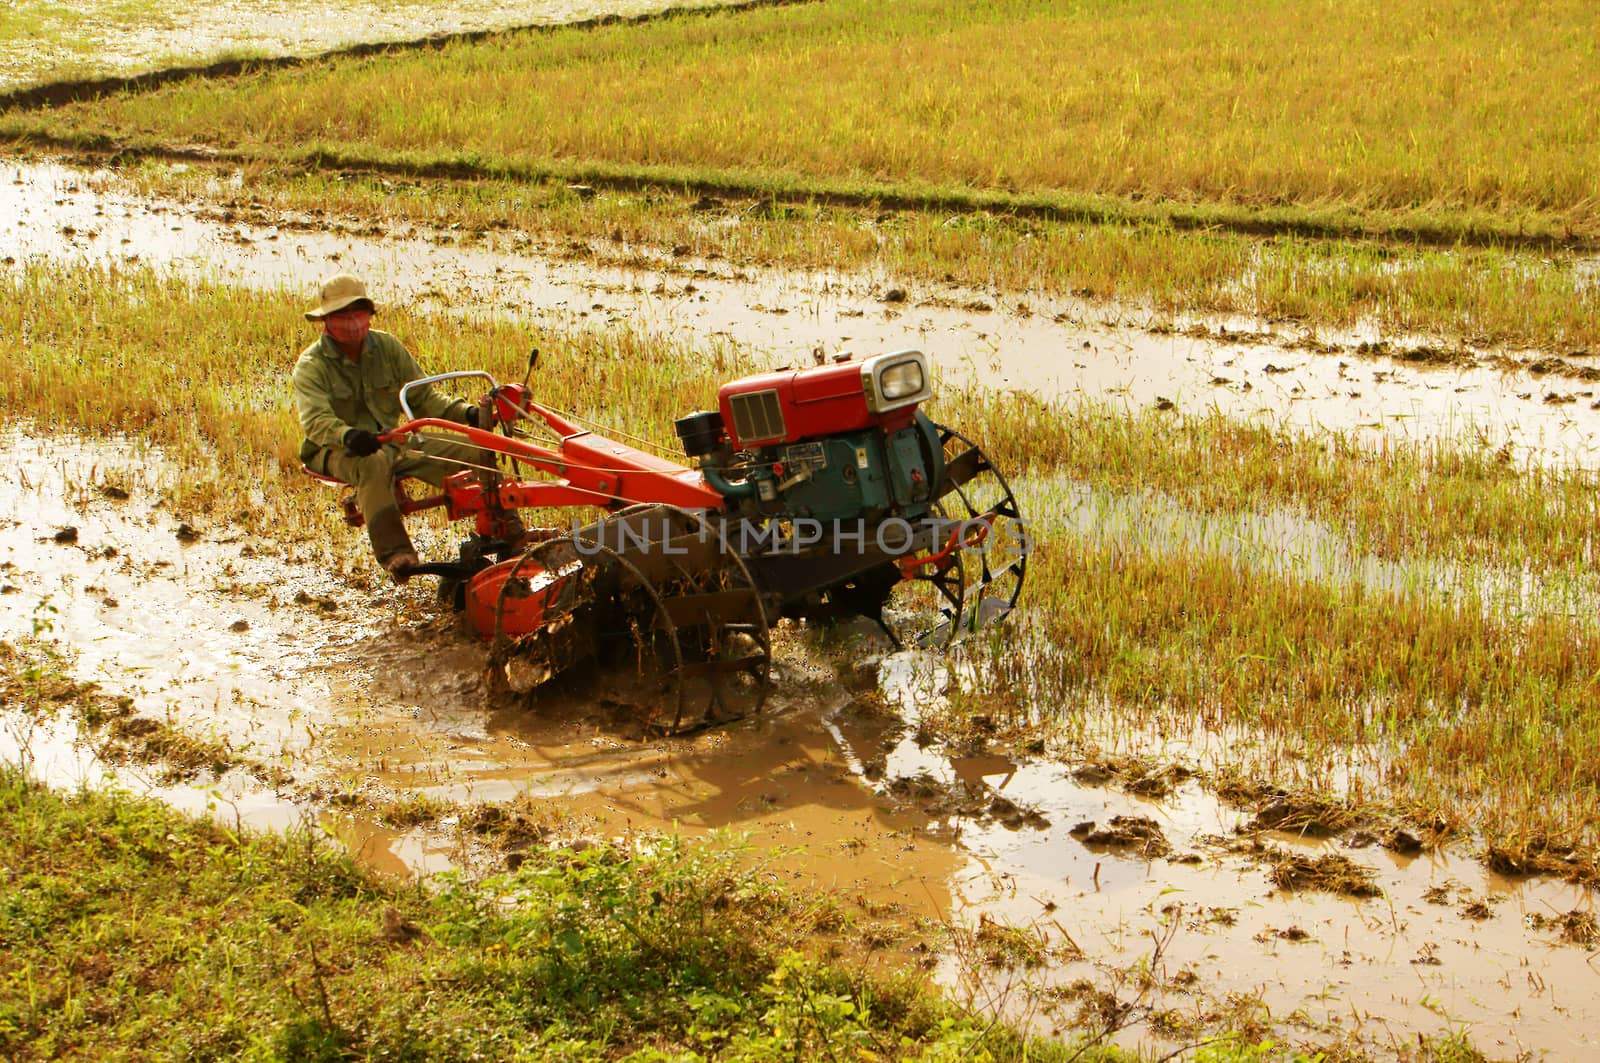 DAKLAK, VIET NAM- SEPTEMBER 5: Farmer driving farm tractor to ploughing on rice field in Daklak, Viet Nam, September 5, 2012                 